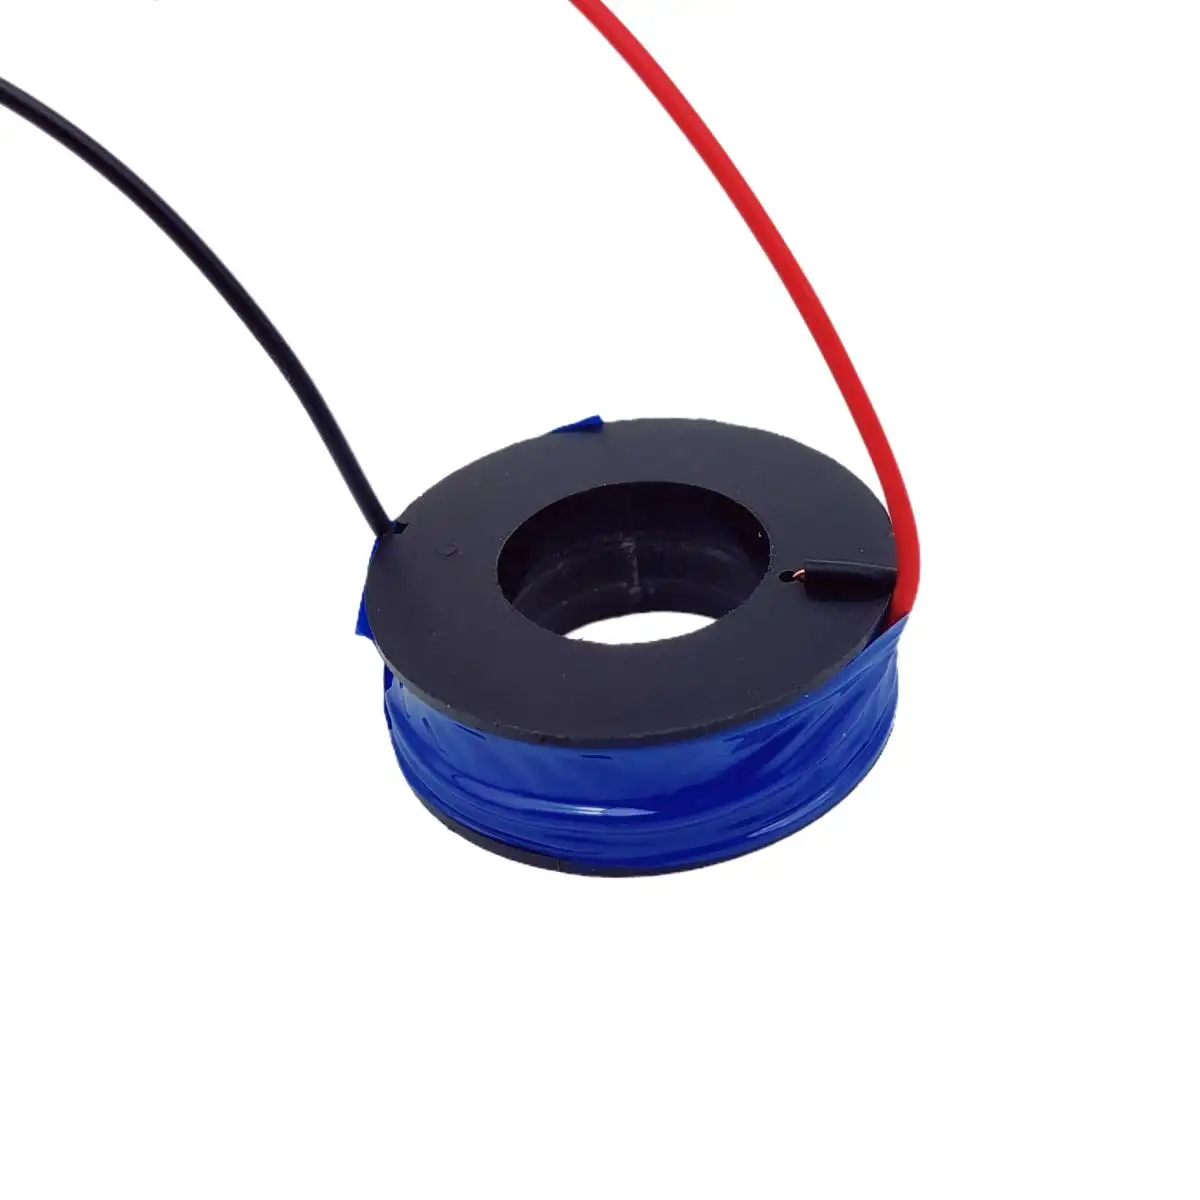 Özel değişken elektronik bileşenler ürün aksesuar tel yara bobin bobin Mini indüktör bobin